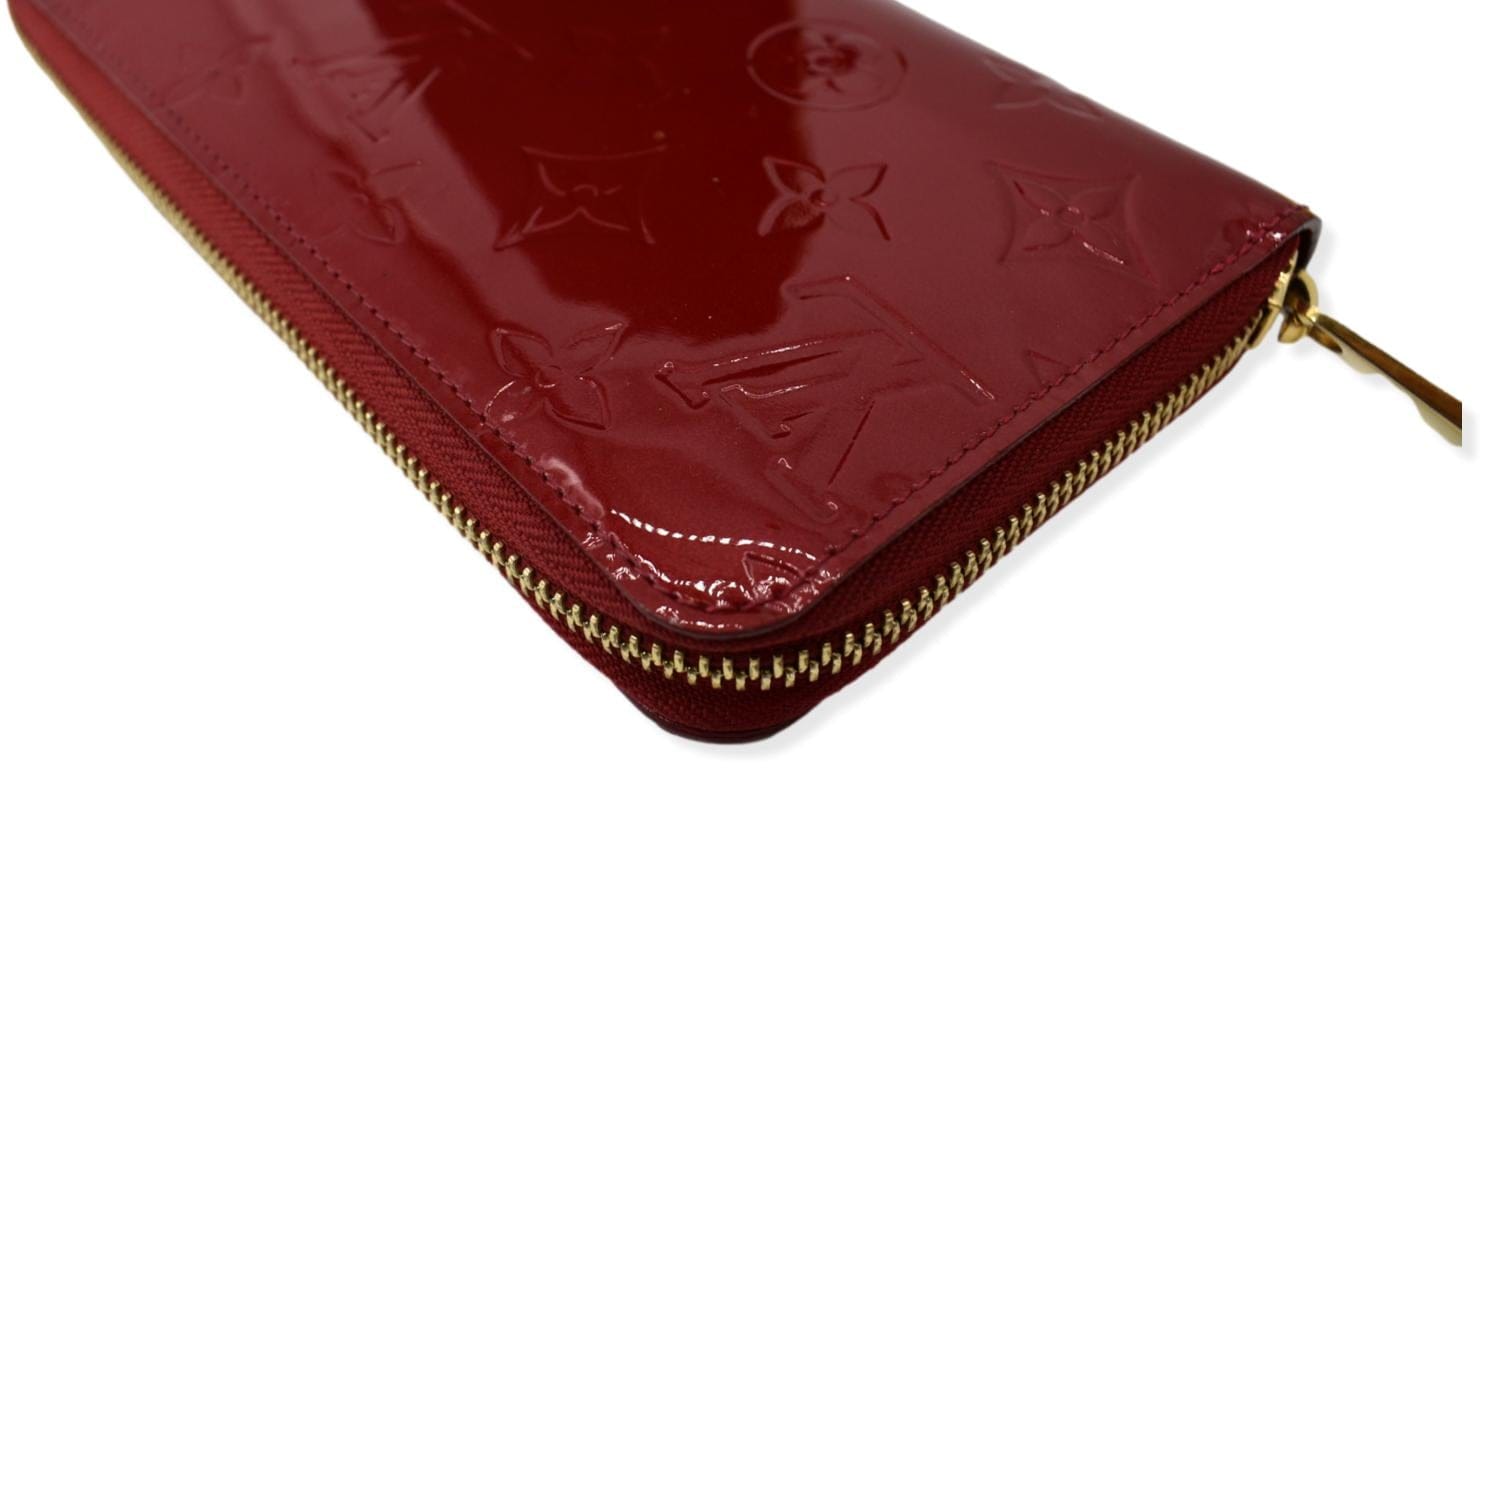 Authentic Louis Vuitton LV Vernis Leather Zippy Wallet